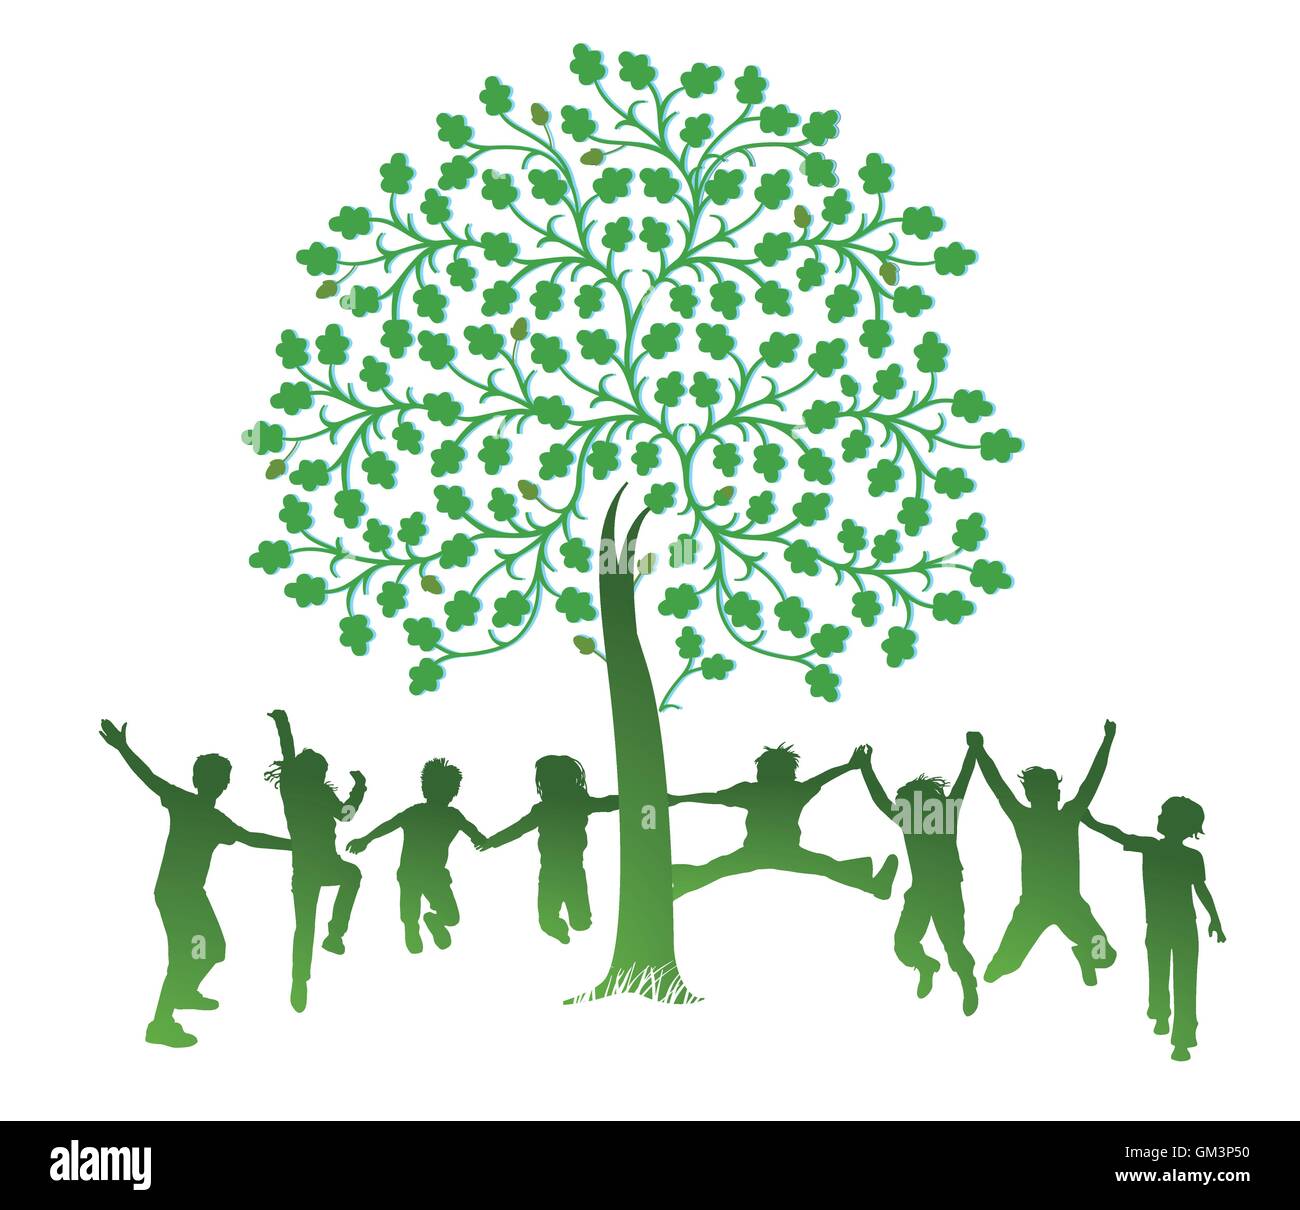 Les enfants sauter autour d'un arbre Illustration de Vecteur